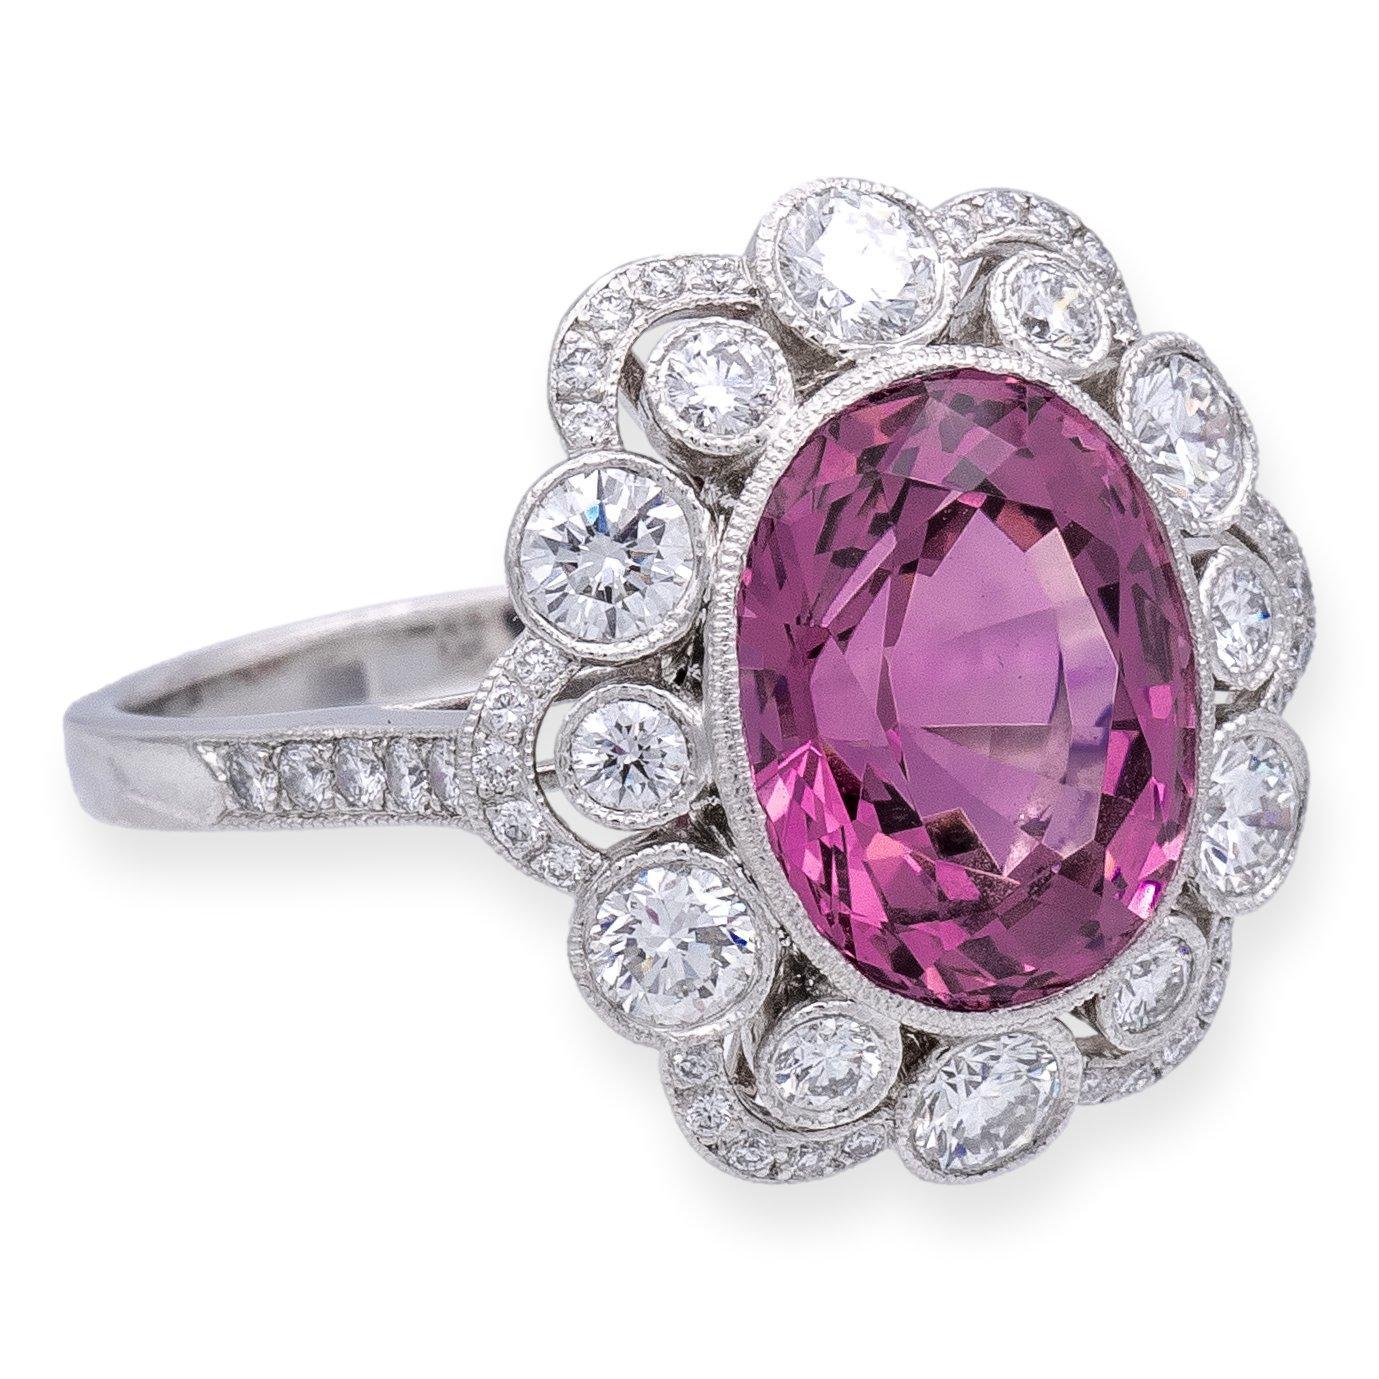 Voici un Rare Vintage Tiffany & Co. Diamond Ring, un véritable chef-d'œuvre d'élégance intemporelle et d'artisanat exquis. Cette bague extraordinaire est ornée d'une superbe pierre centrale ovale de 5,20 carats en spinelle rose à facettes, qui